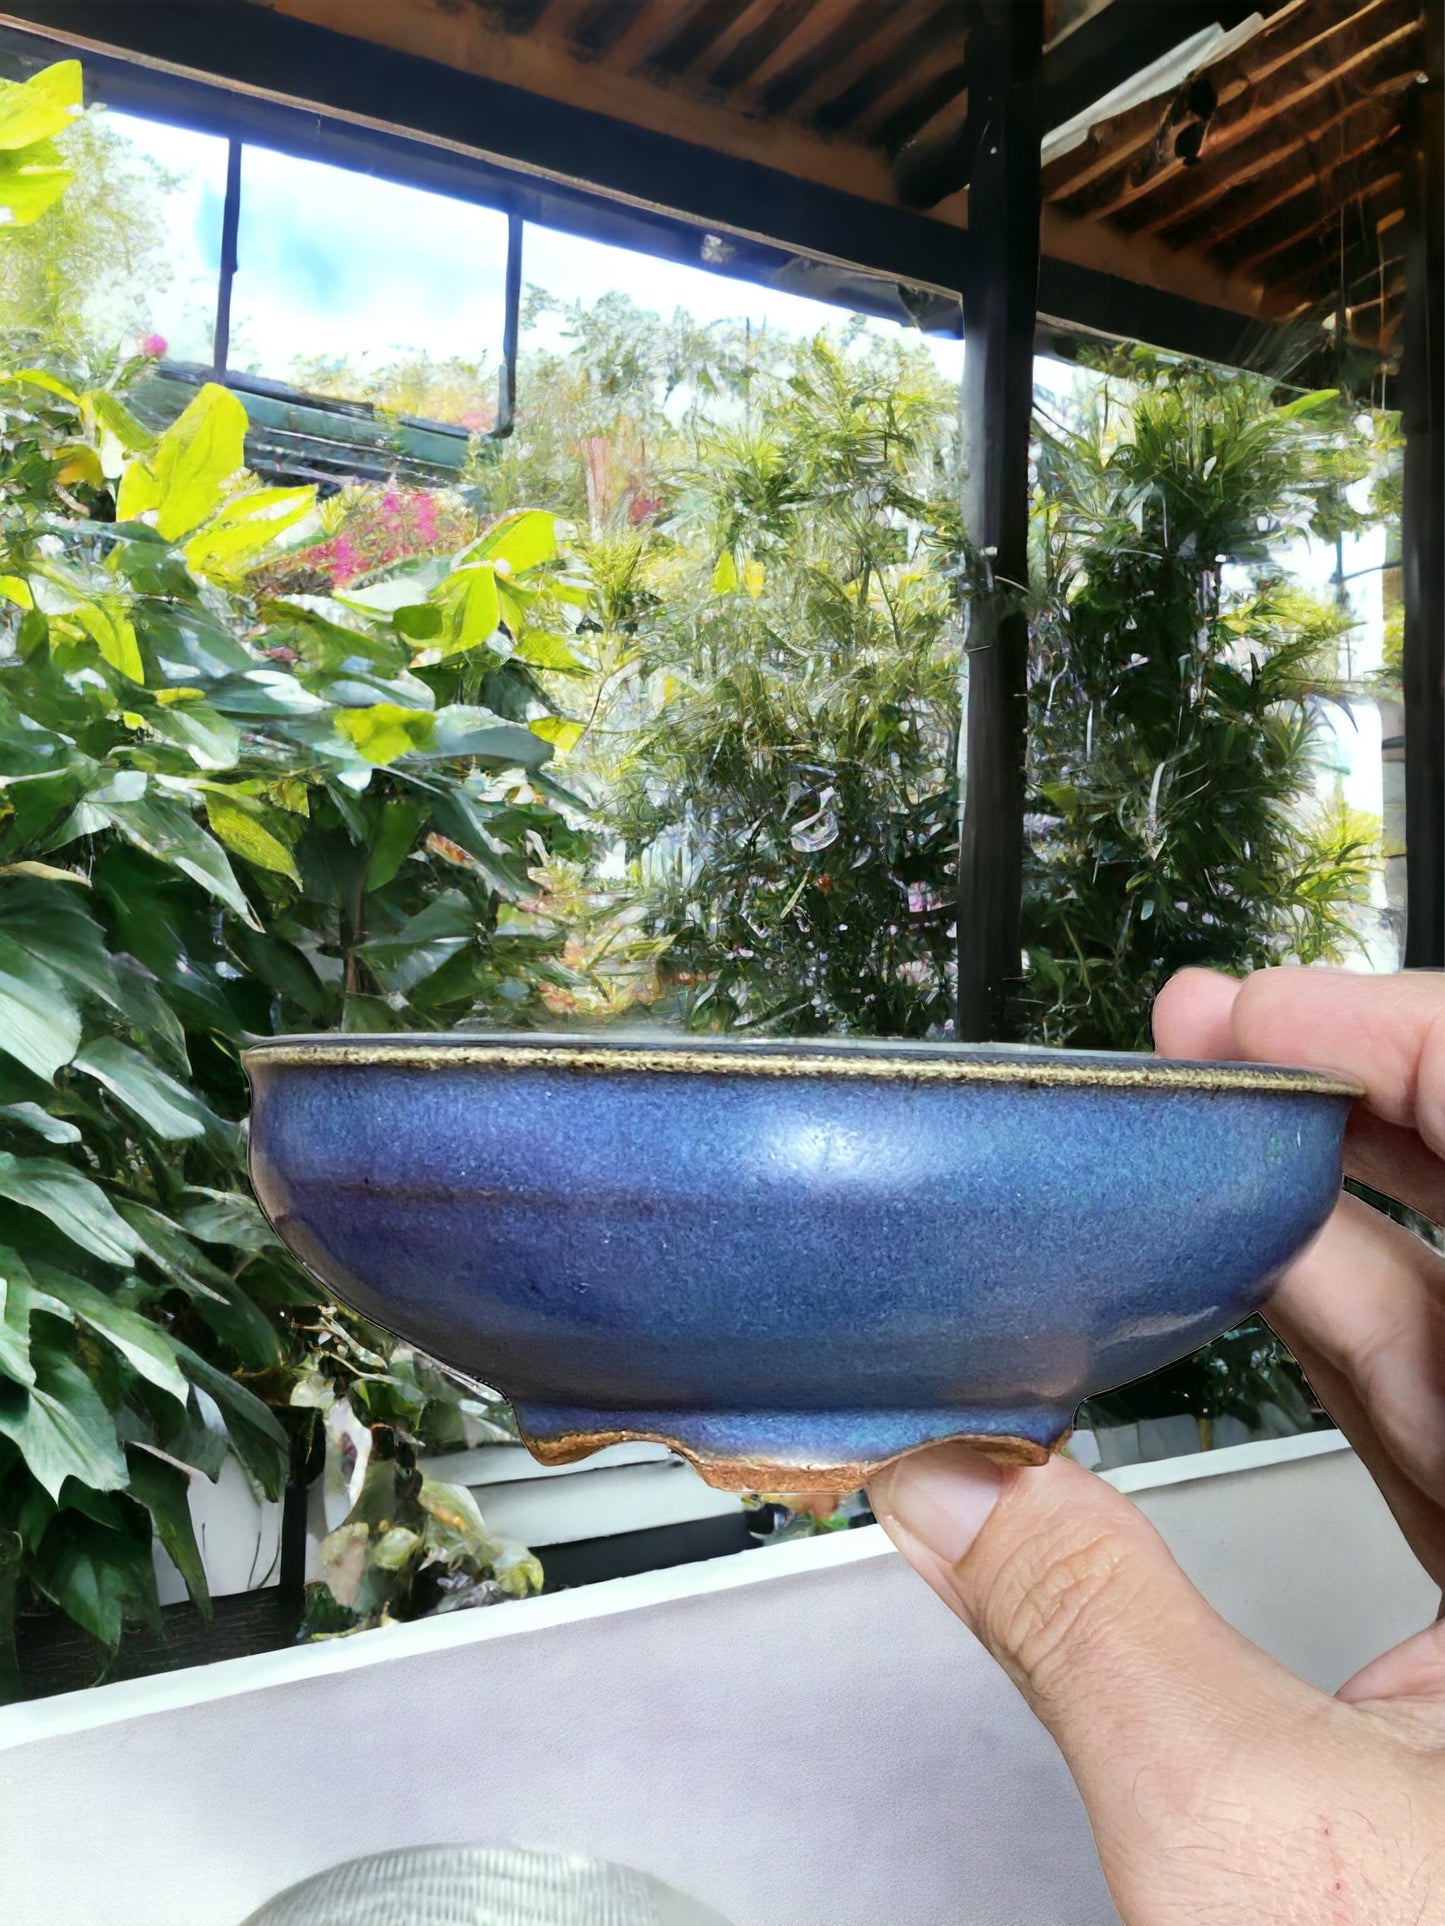 Shoseki - Rare Older Blue Glazed Bonsai Pot